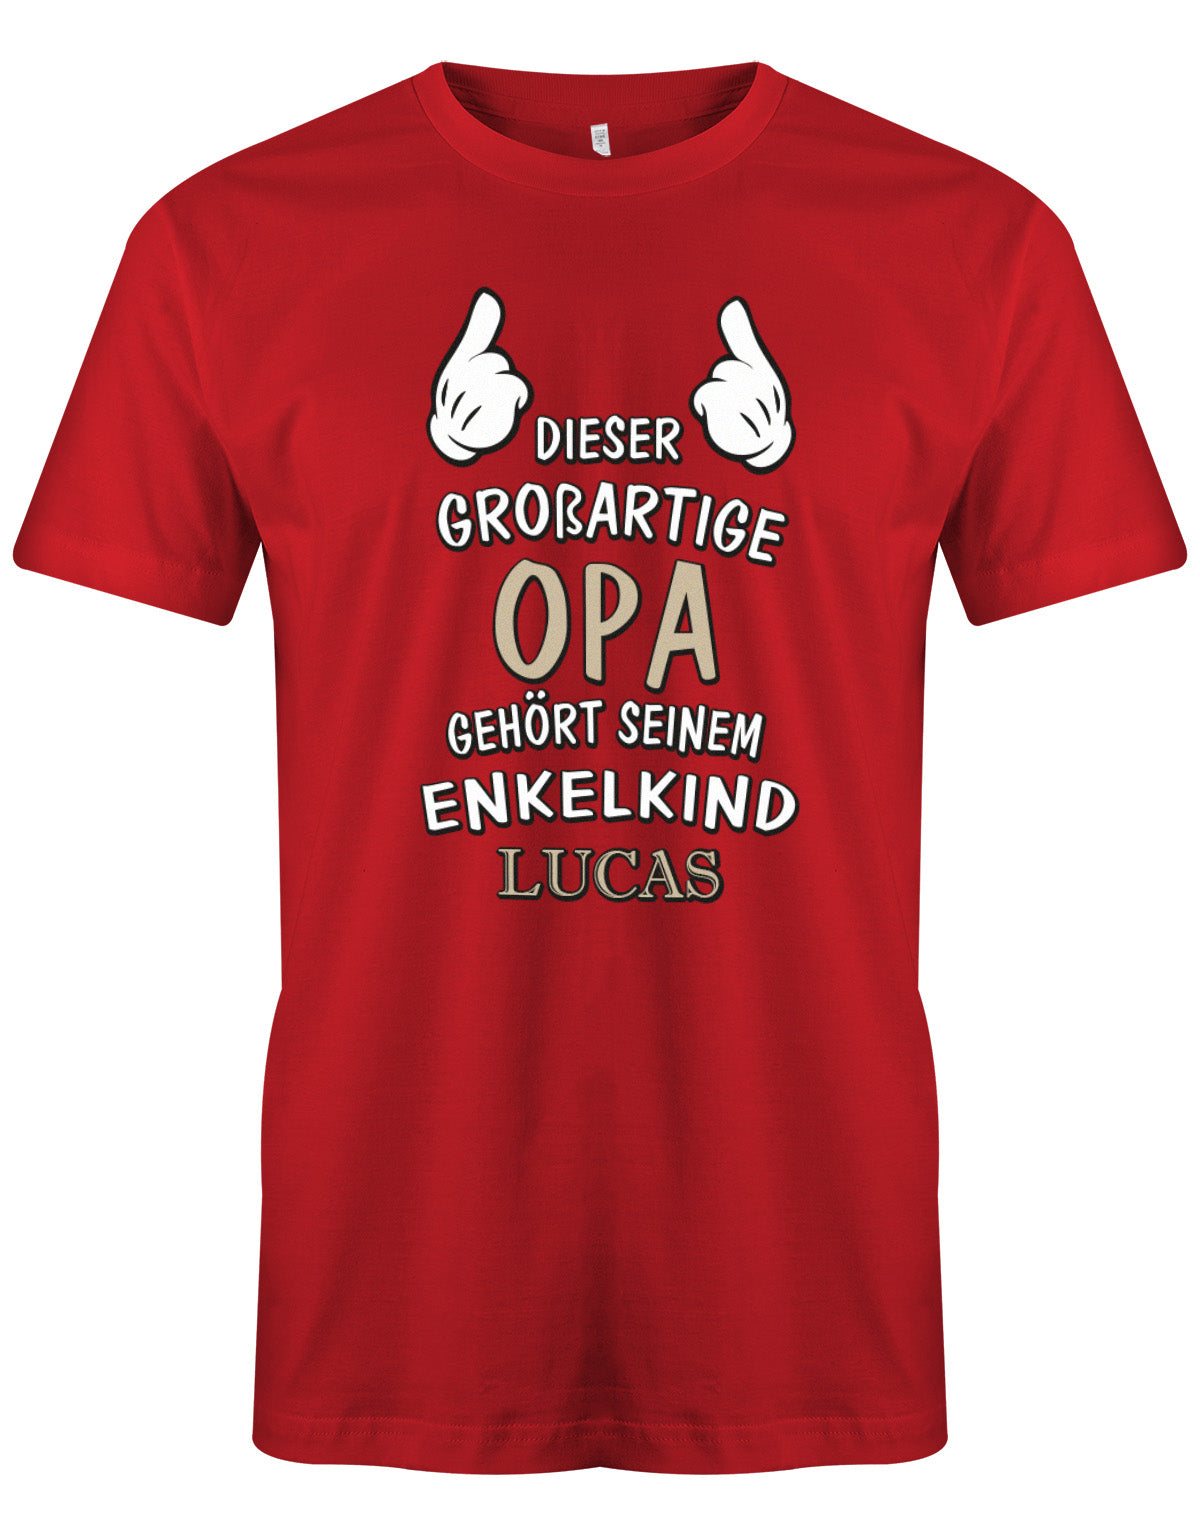 Opa Shirt personalisiert - Dieser großartige Opa gehört seinen Enkelkind. Mit Namen vom Enkelkind. Rot